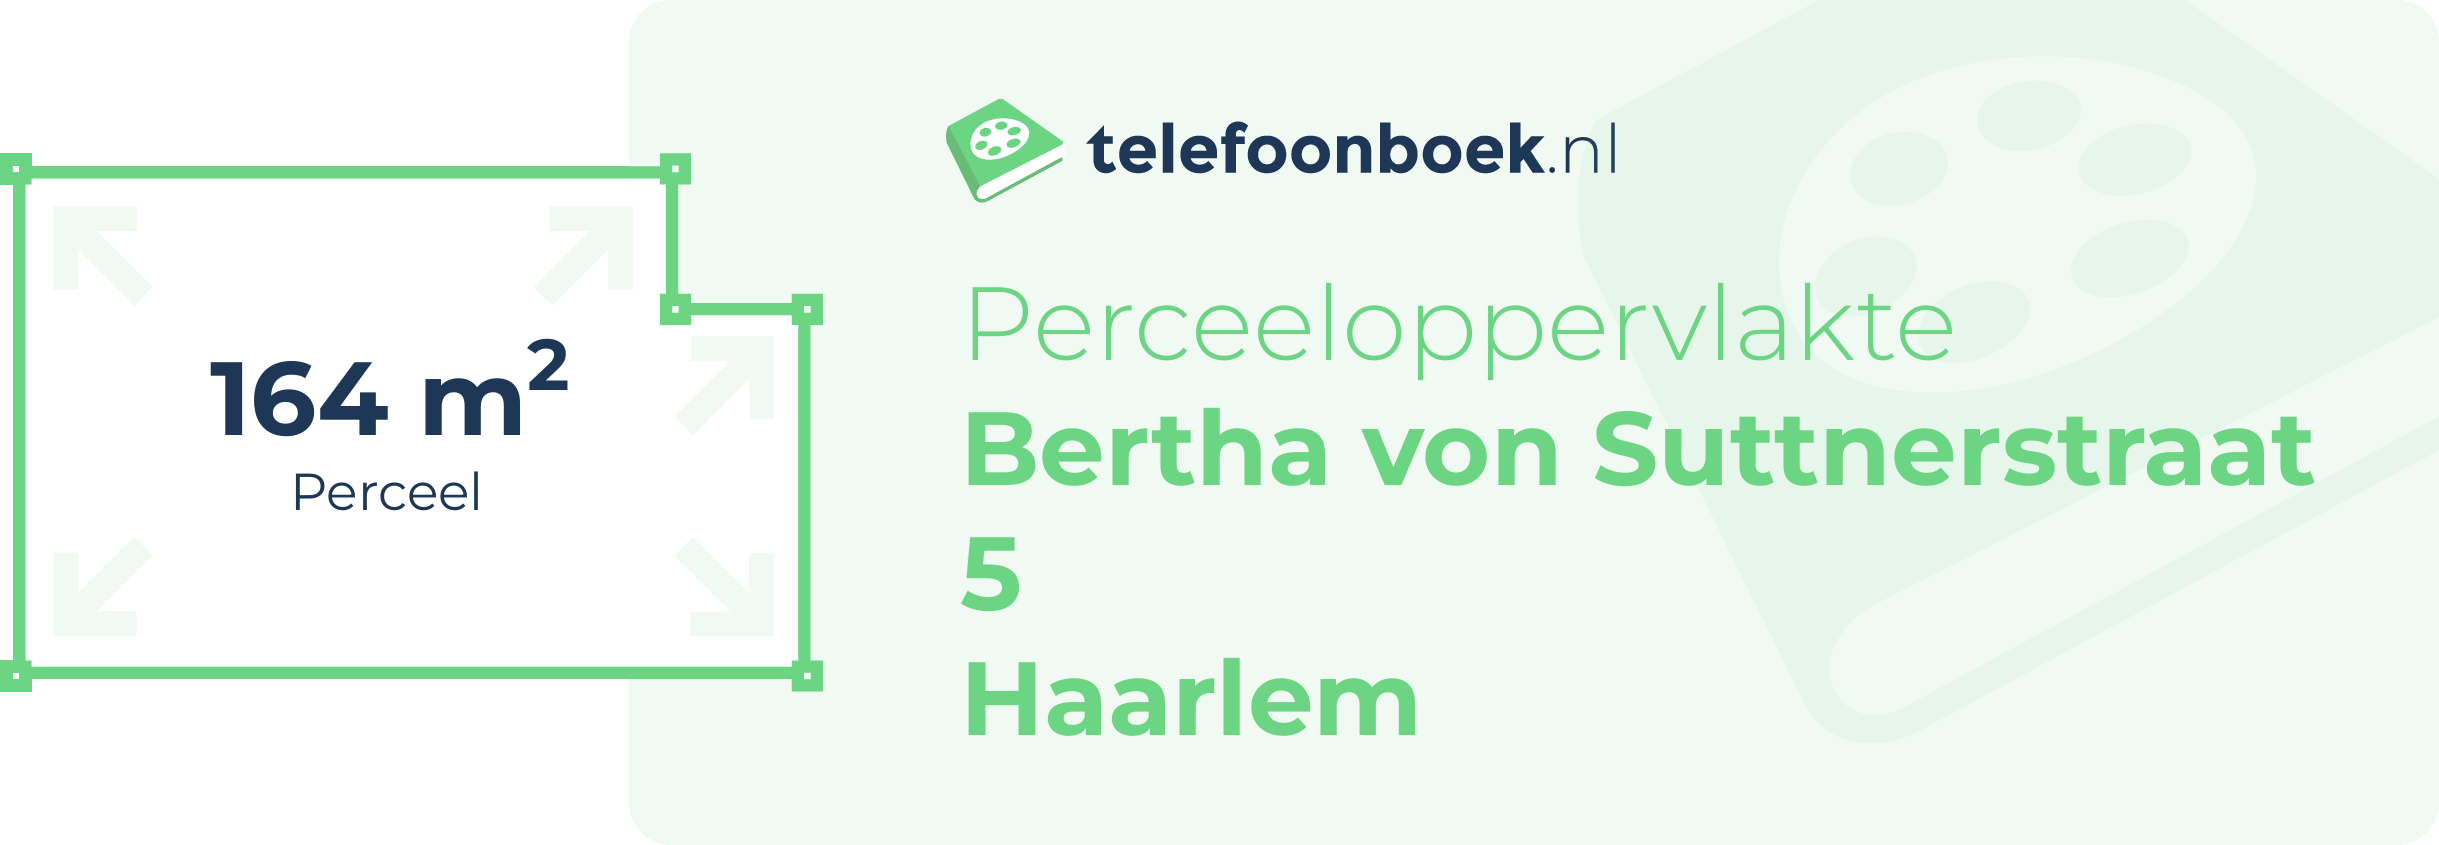 Perceeloppervlakte Bertha Von Suttnerstraat 5 Haarlem